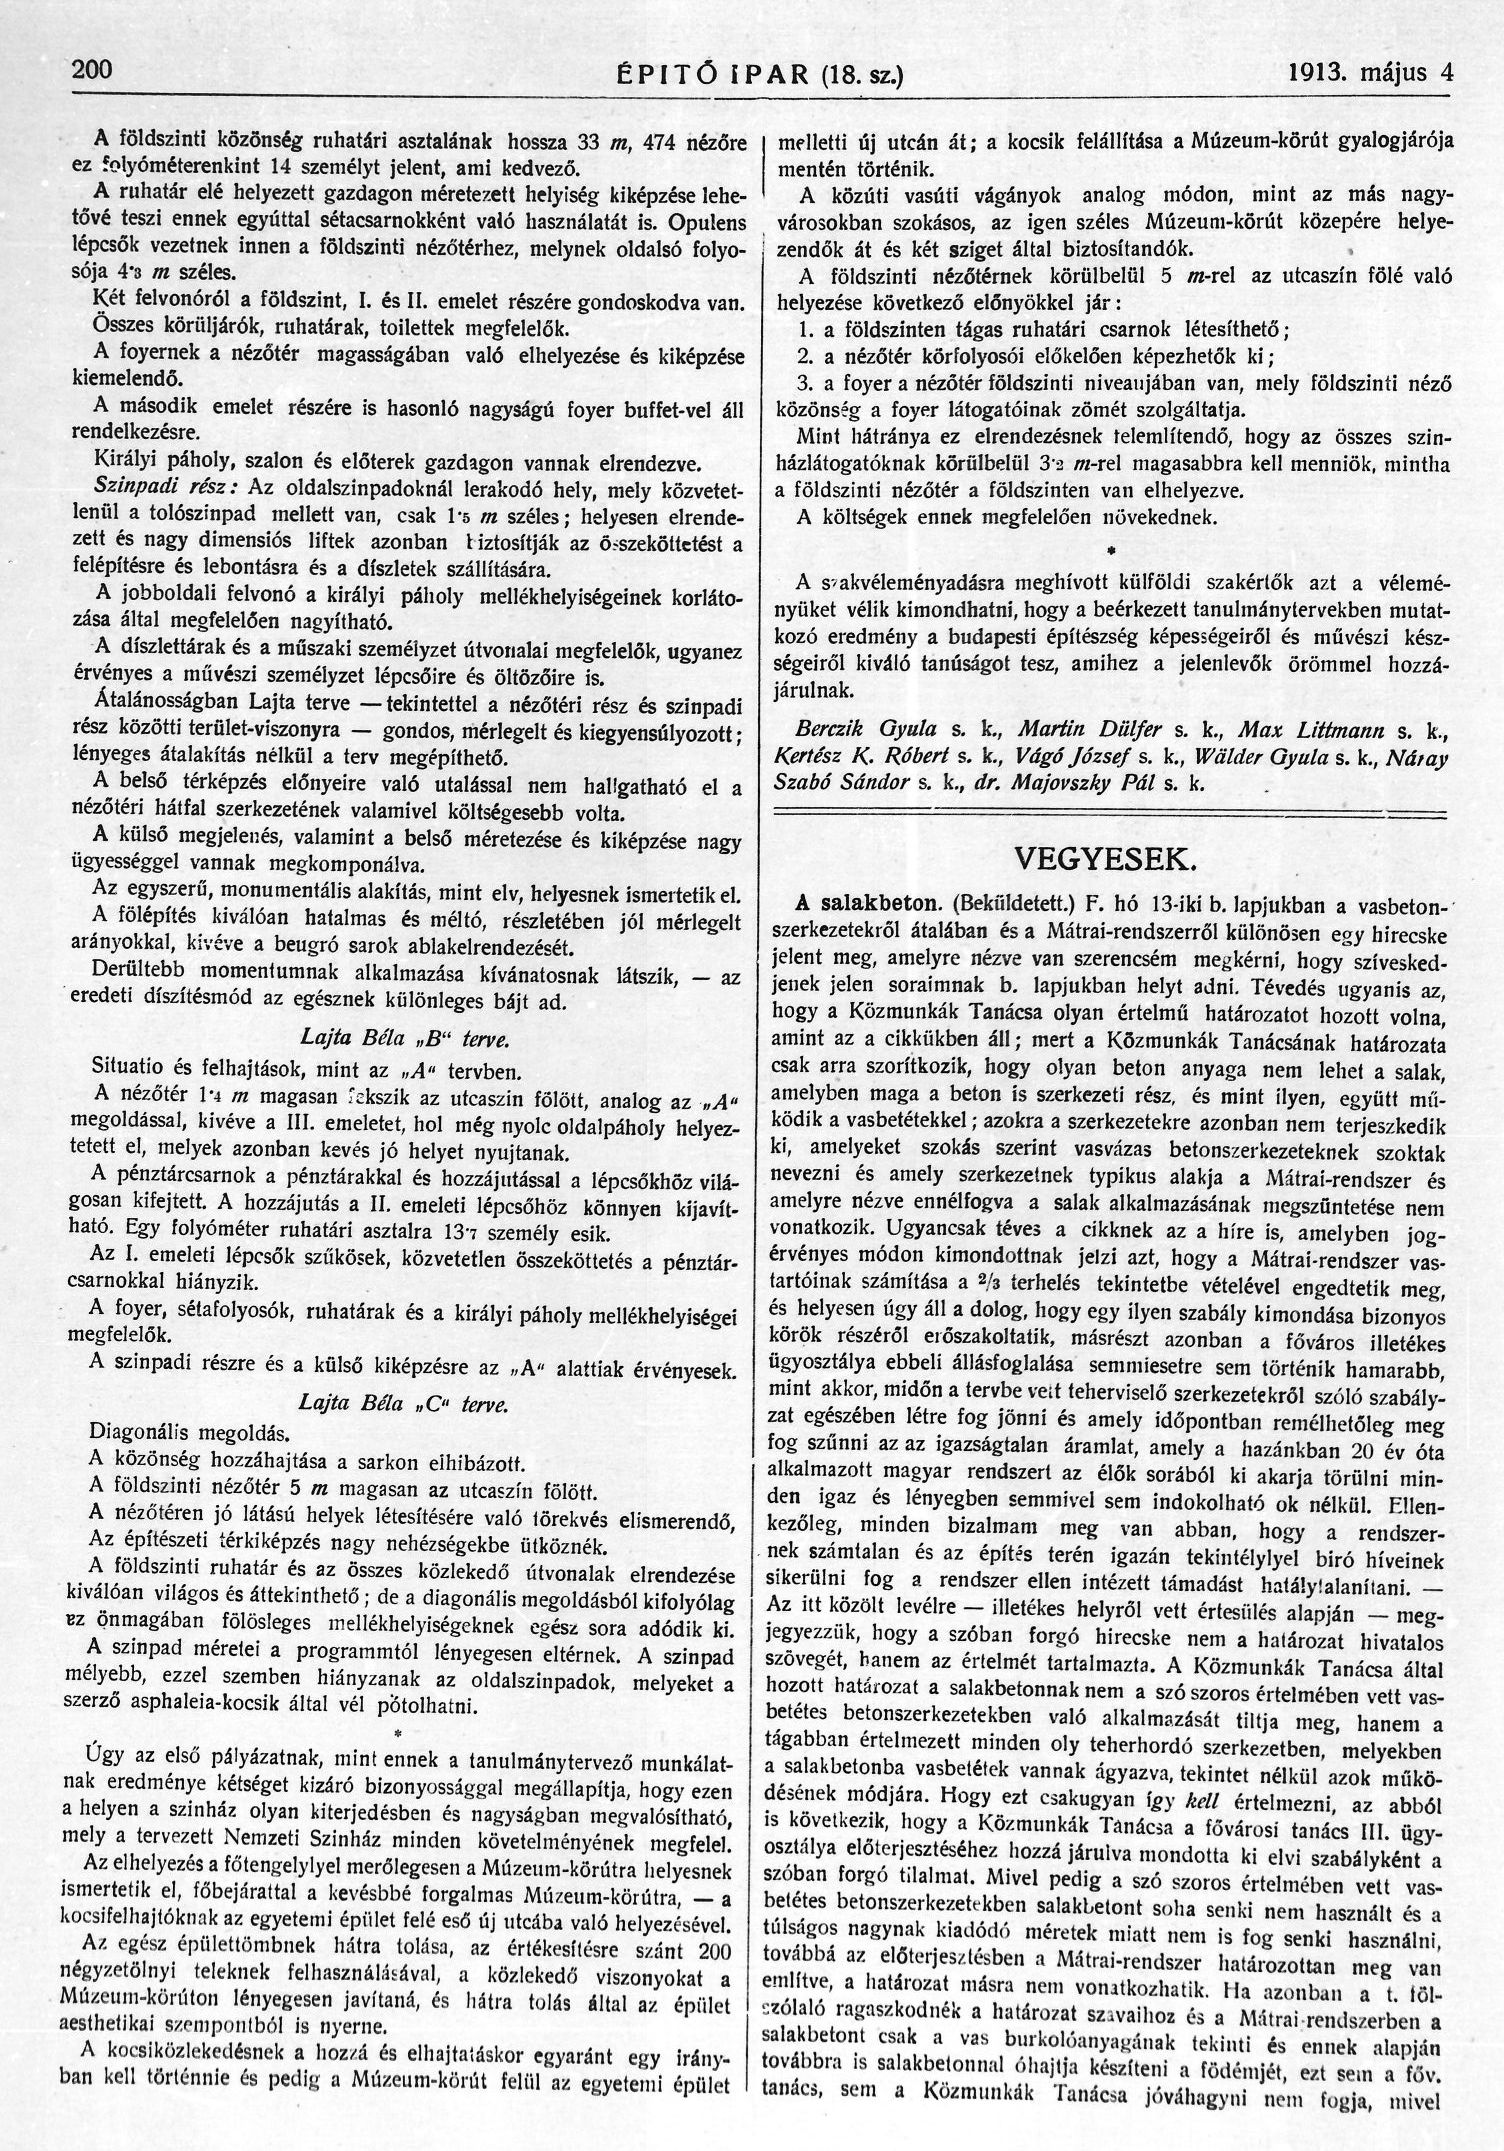 282_Építő Ipar, 1913. V. 4. 200. p. 